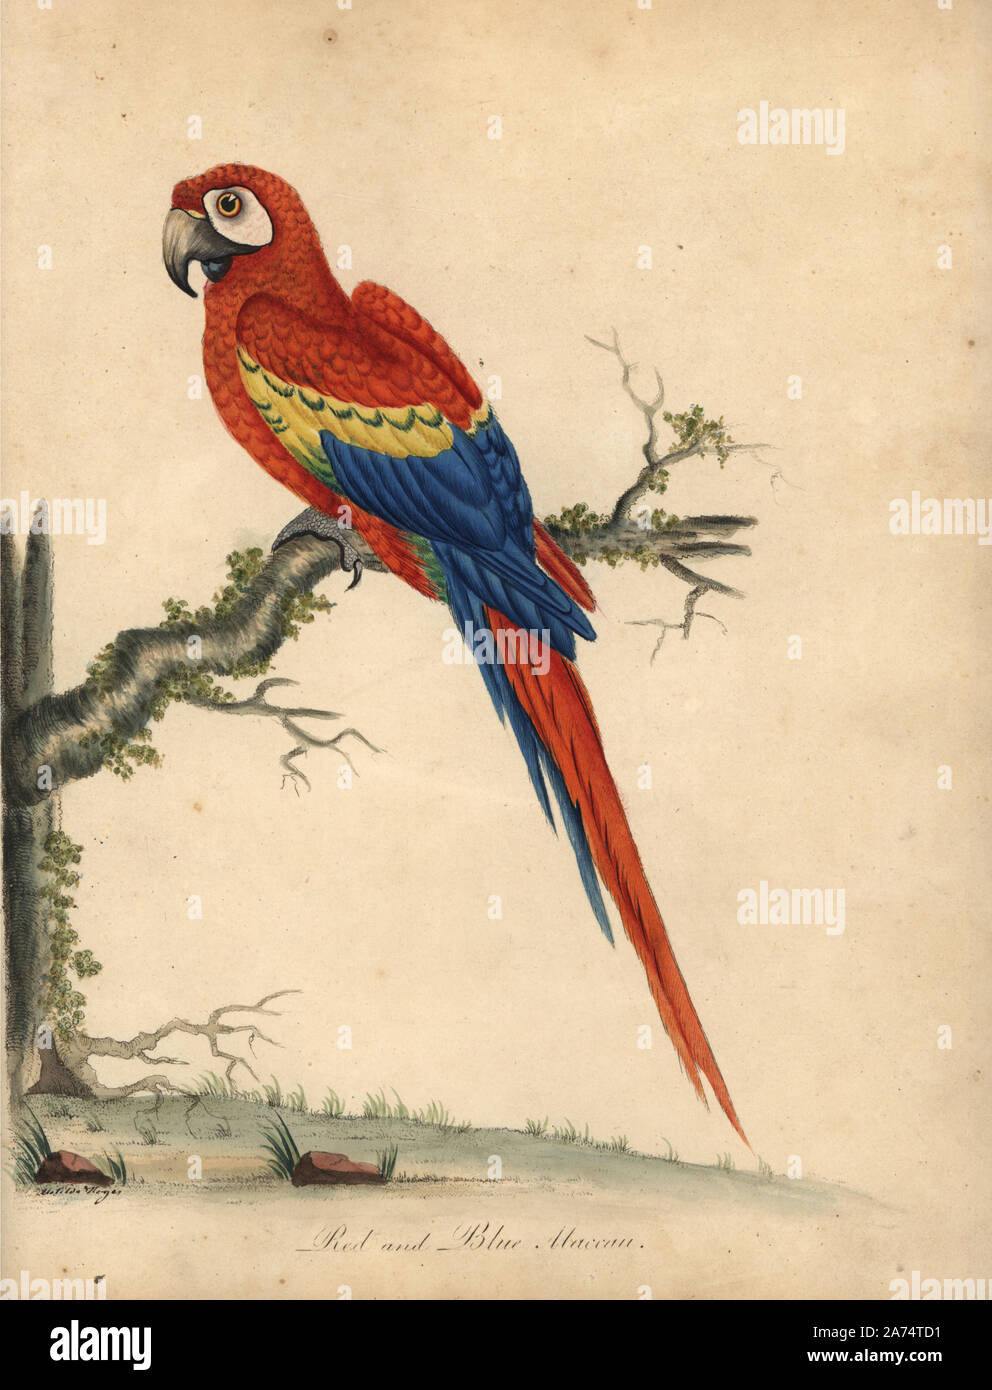 Scarlet Macaw, Ara macao. (Rosso blu, Psittacus macao) Handcolored incisione su rame di una illustrazione di William Hayes e sua figlia Matilde da William Hayes' ritratti di rari e curiosi